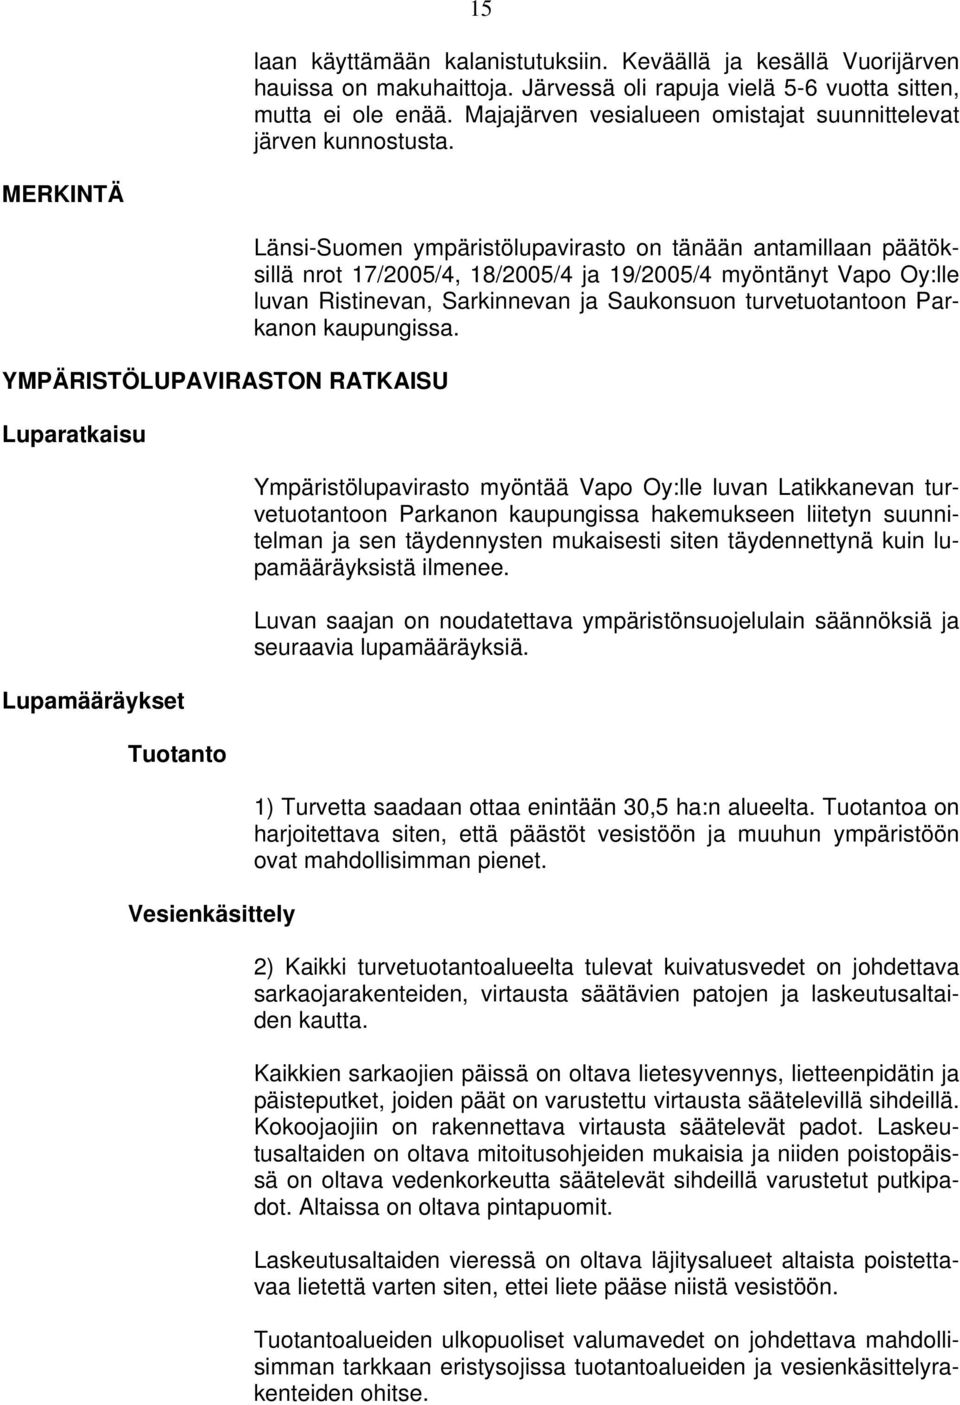 MERKINTÄ YMPÄRISTÖLUPAVIRASTON RATKAISU Luparatkaisu Lupamääräykset Tuotanto Vesienkäsittely Länsi-Suomen ympäristölupavirasto on tänään antamillaan päätöksillä nrot 17/2005/4, 18/2005/4 ja 19/2005/4